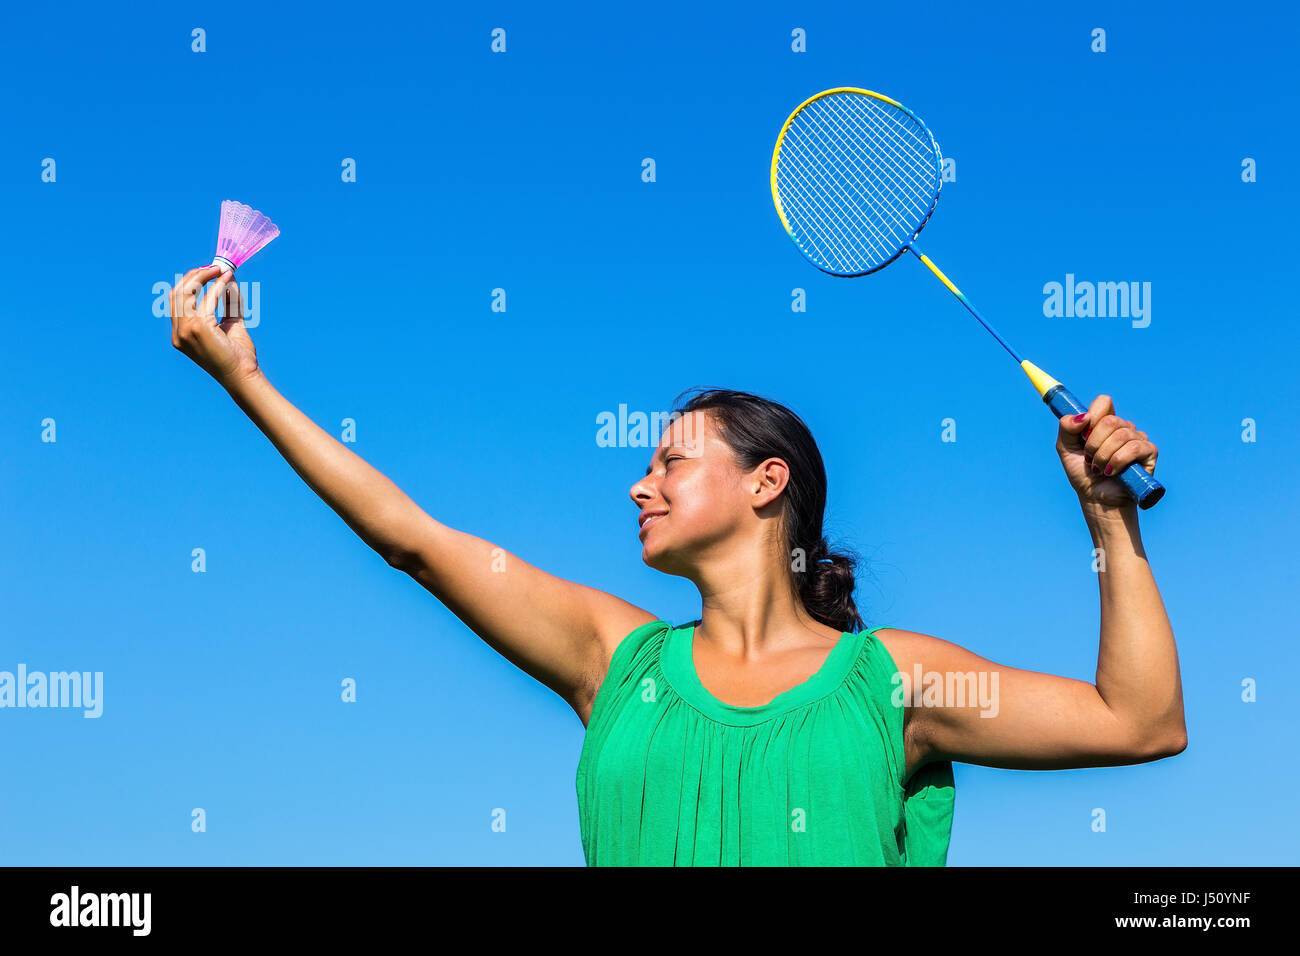 Kolumbianische Frau dienen mit Badminton-Schläger und Shuttle gegen blauen Himmel Stockfoto